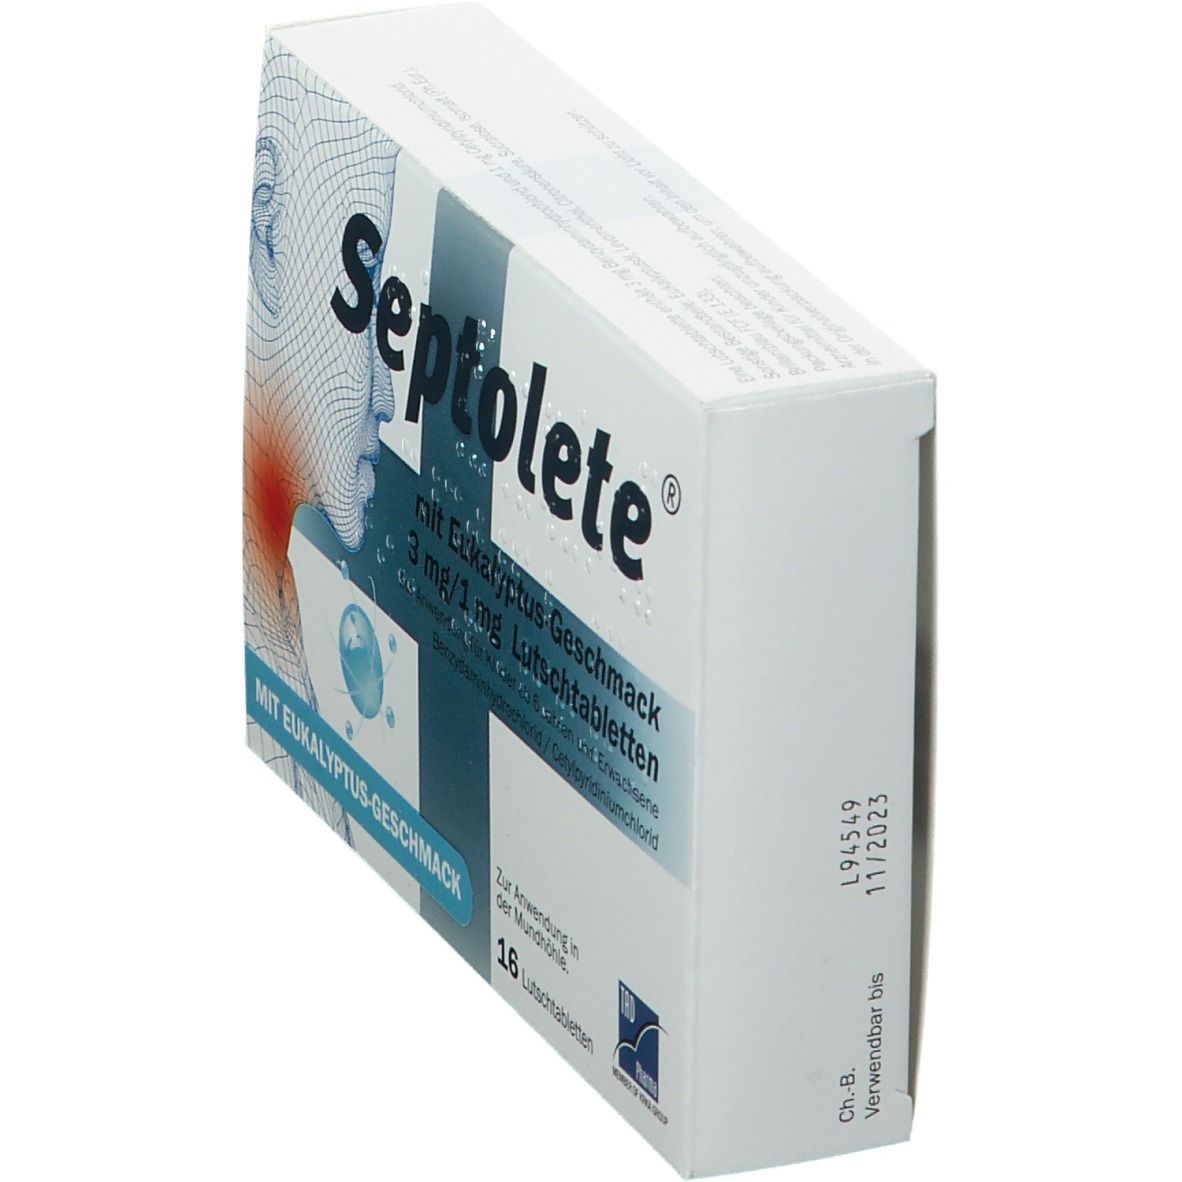 Septolete® 3 mg/1 mg Lutschtabletten Eukalyptus-Geschmack